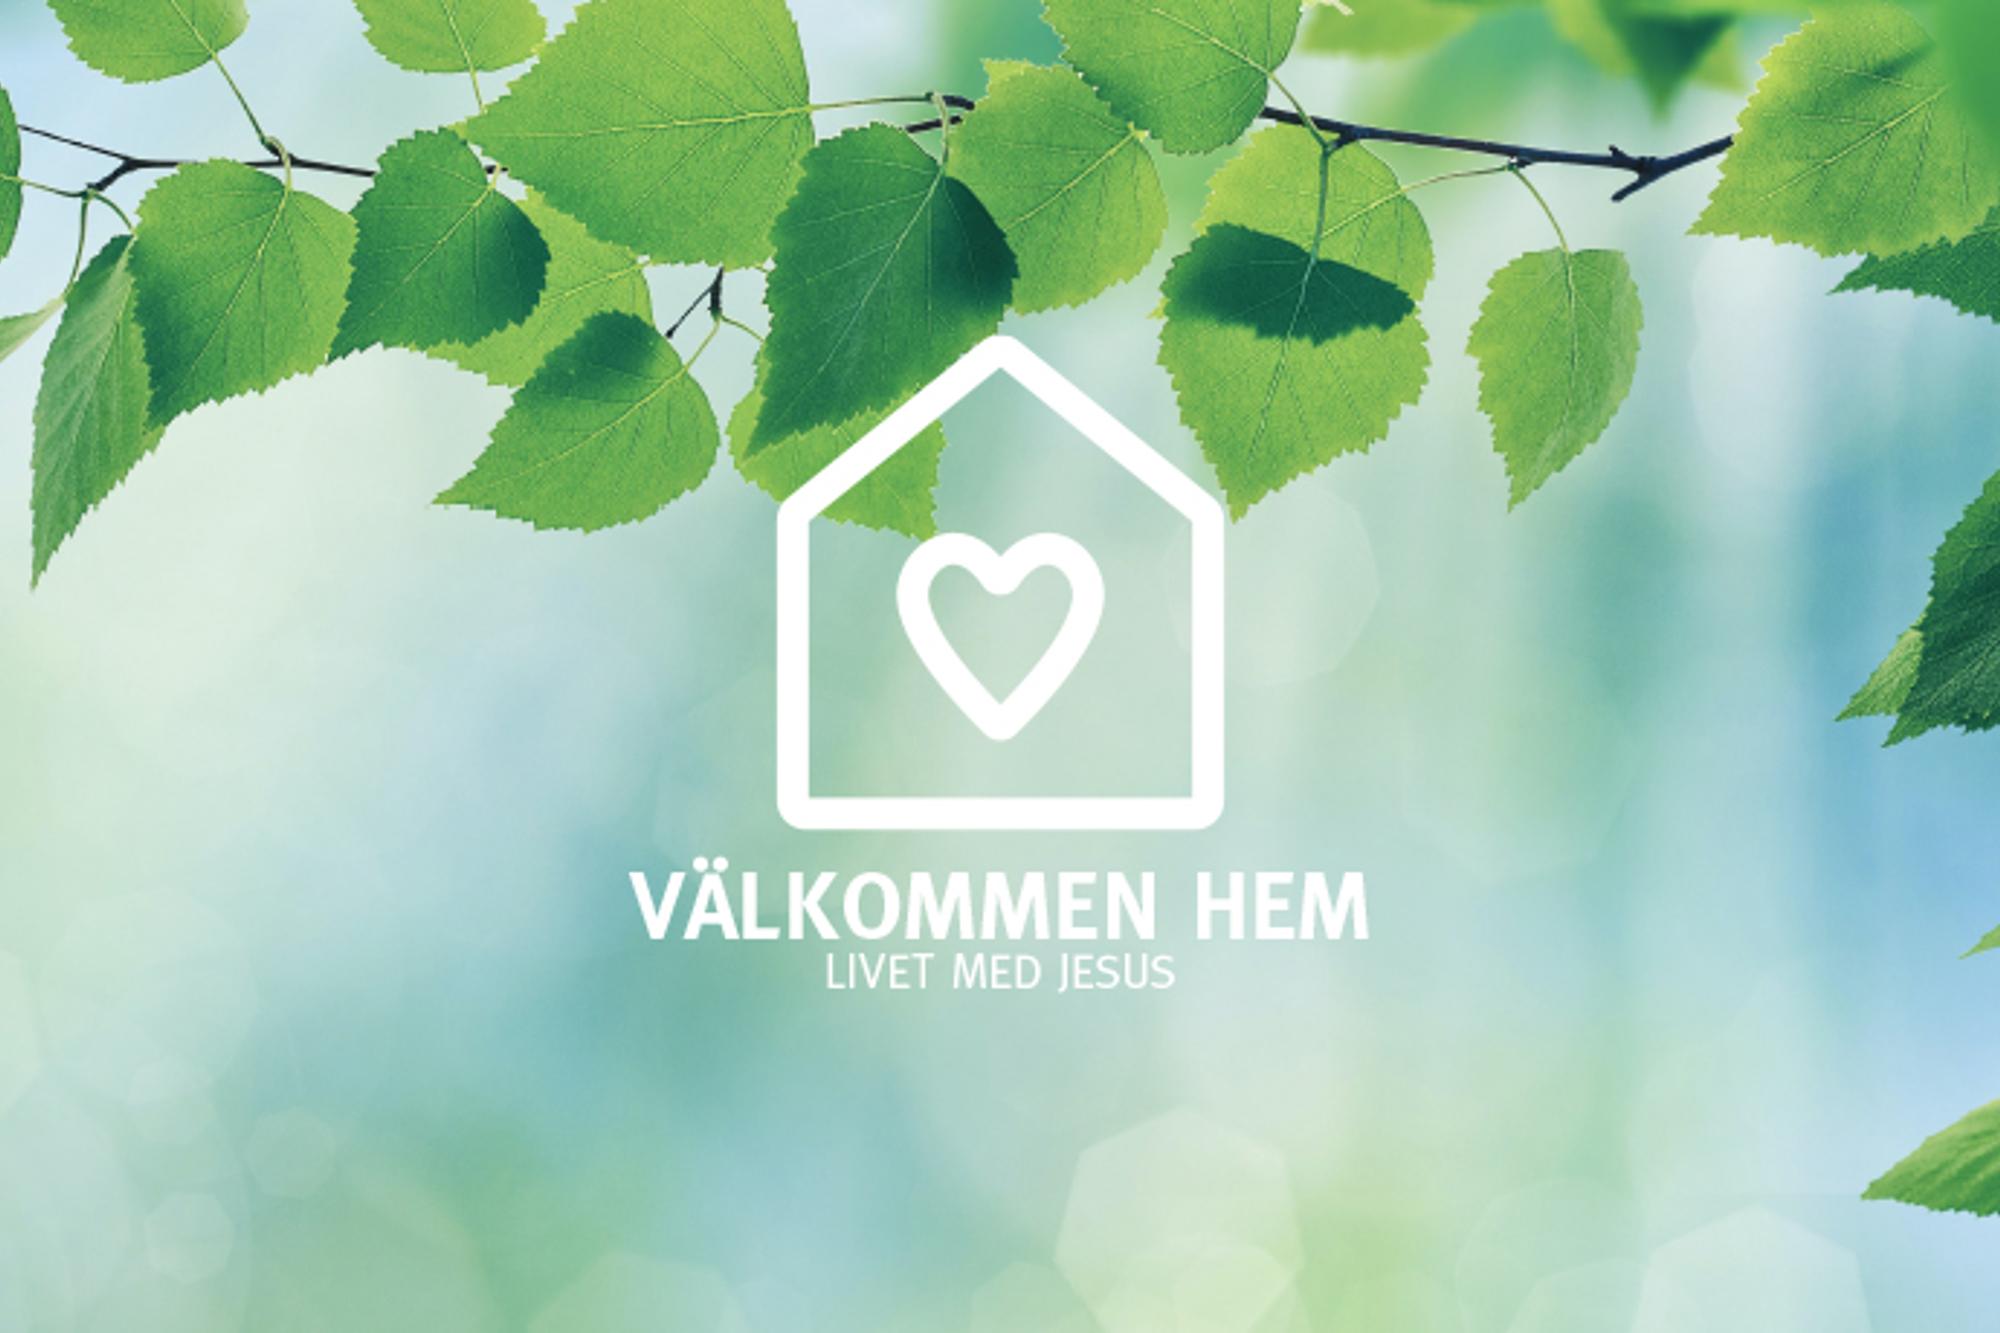 En logotyp i form av ett hus med ett hjärta på, med texten "Välkommen hem. Livet med Jesus". I bakgrunden hänger det ned en trädgren.